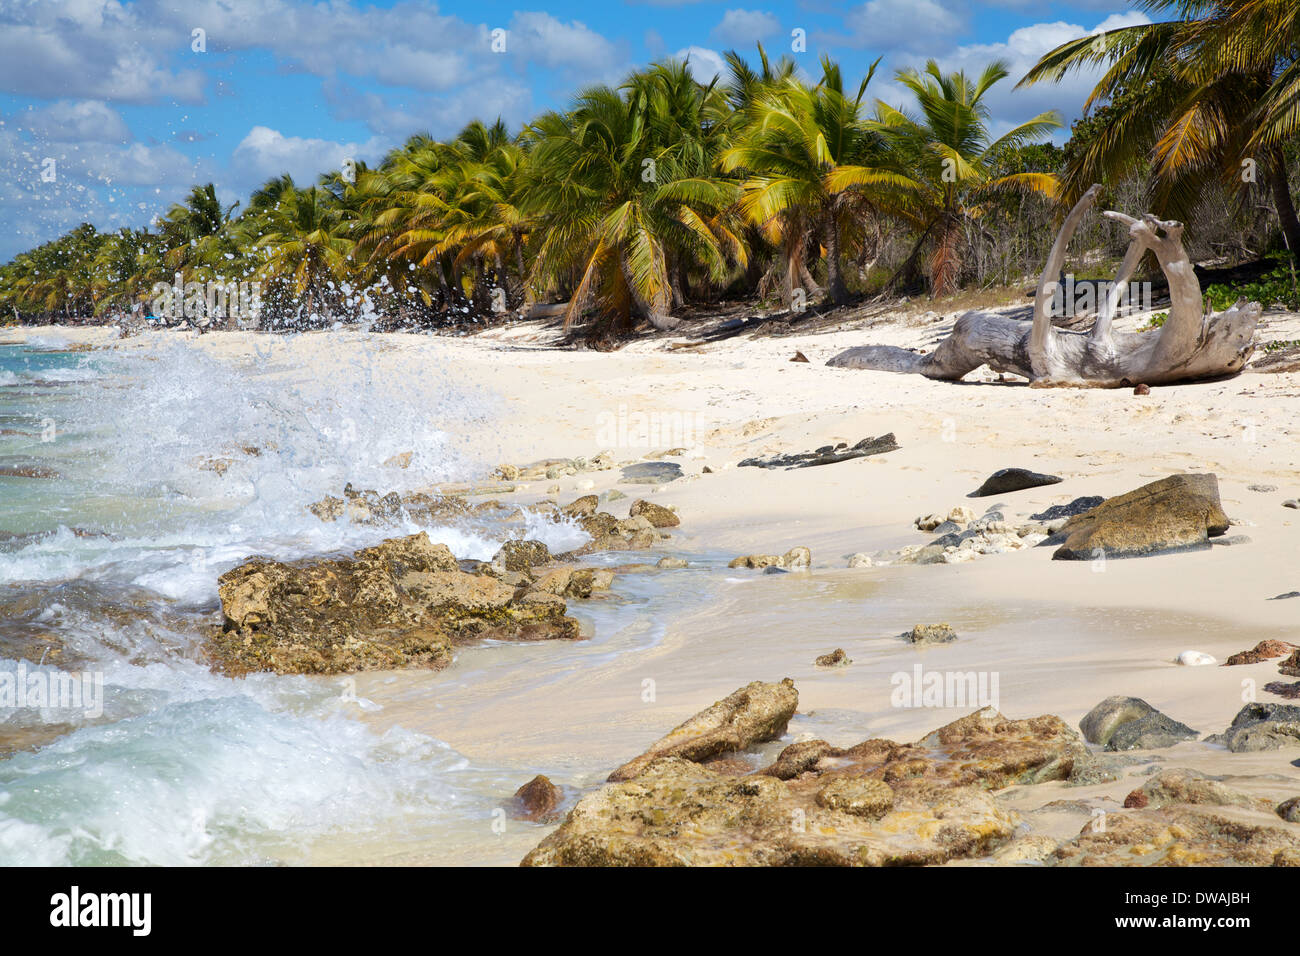 Exótica playa, mar Caribe Foto de stock